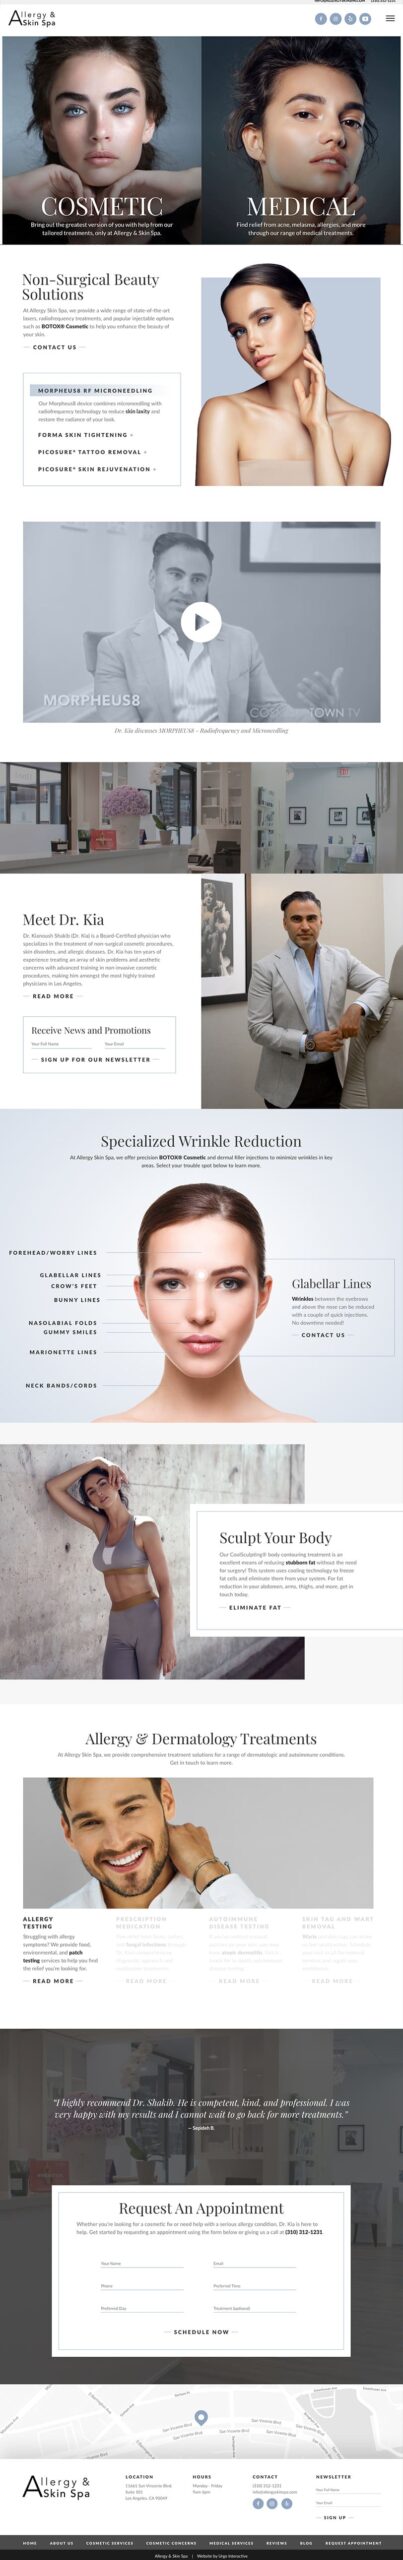 Allergy & Skin Spa full homepage design